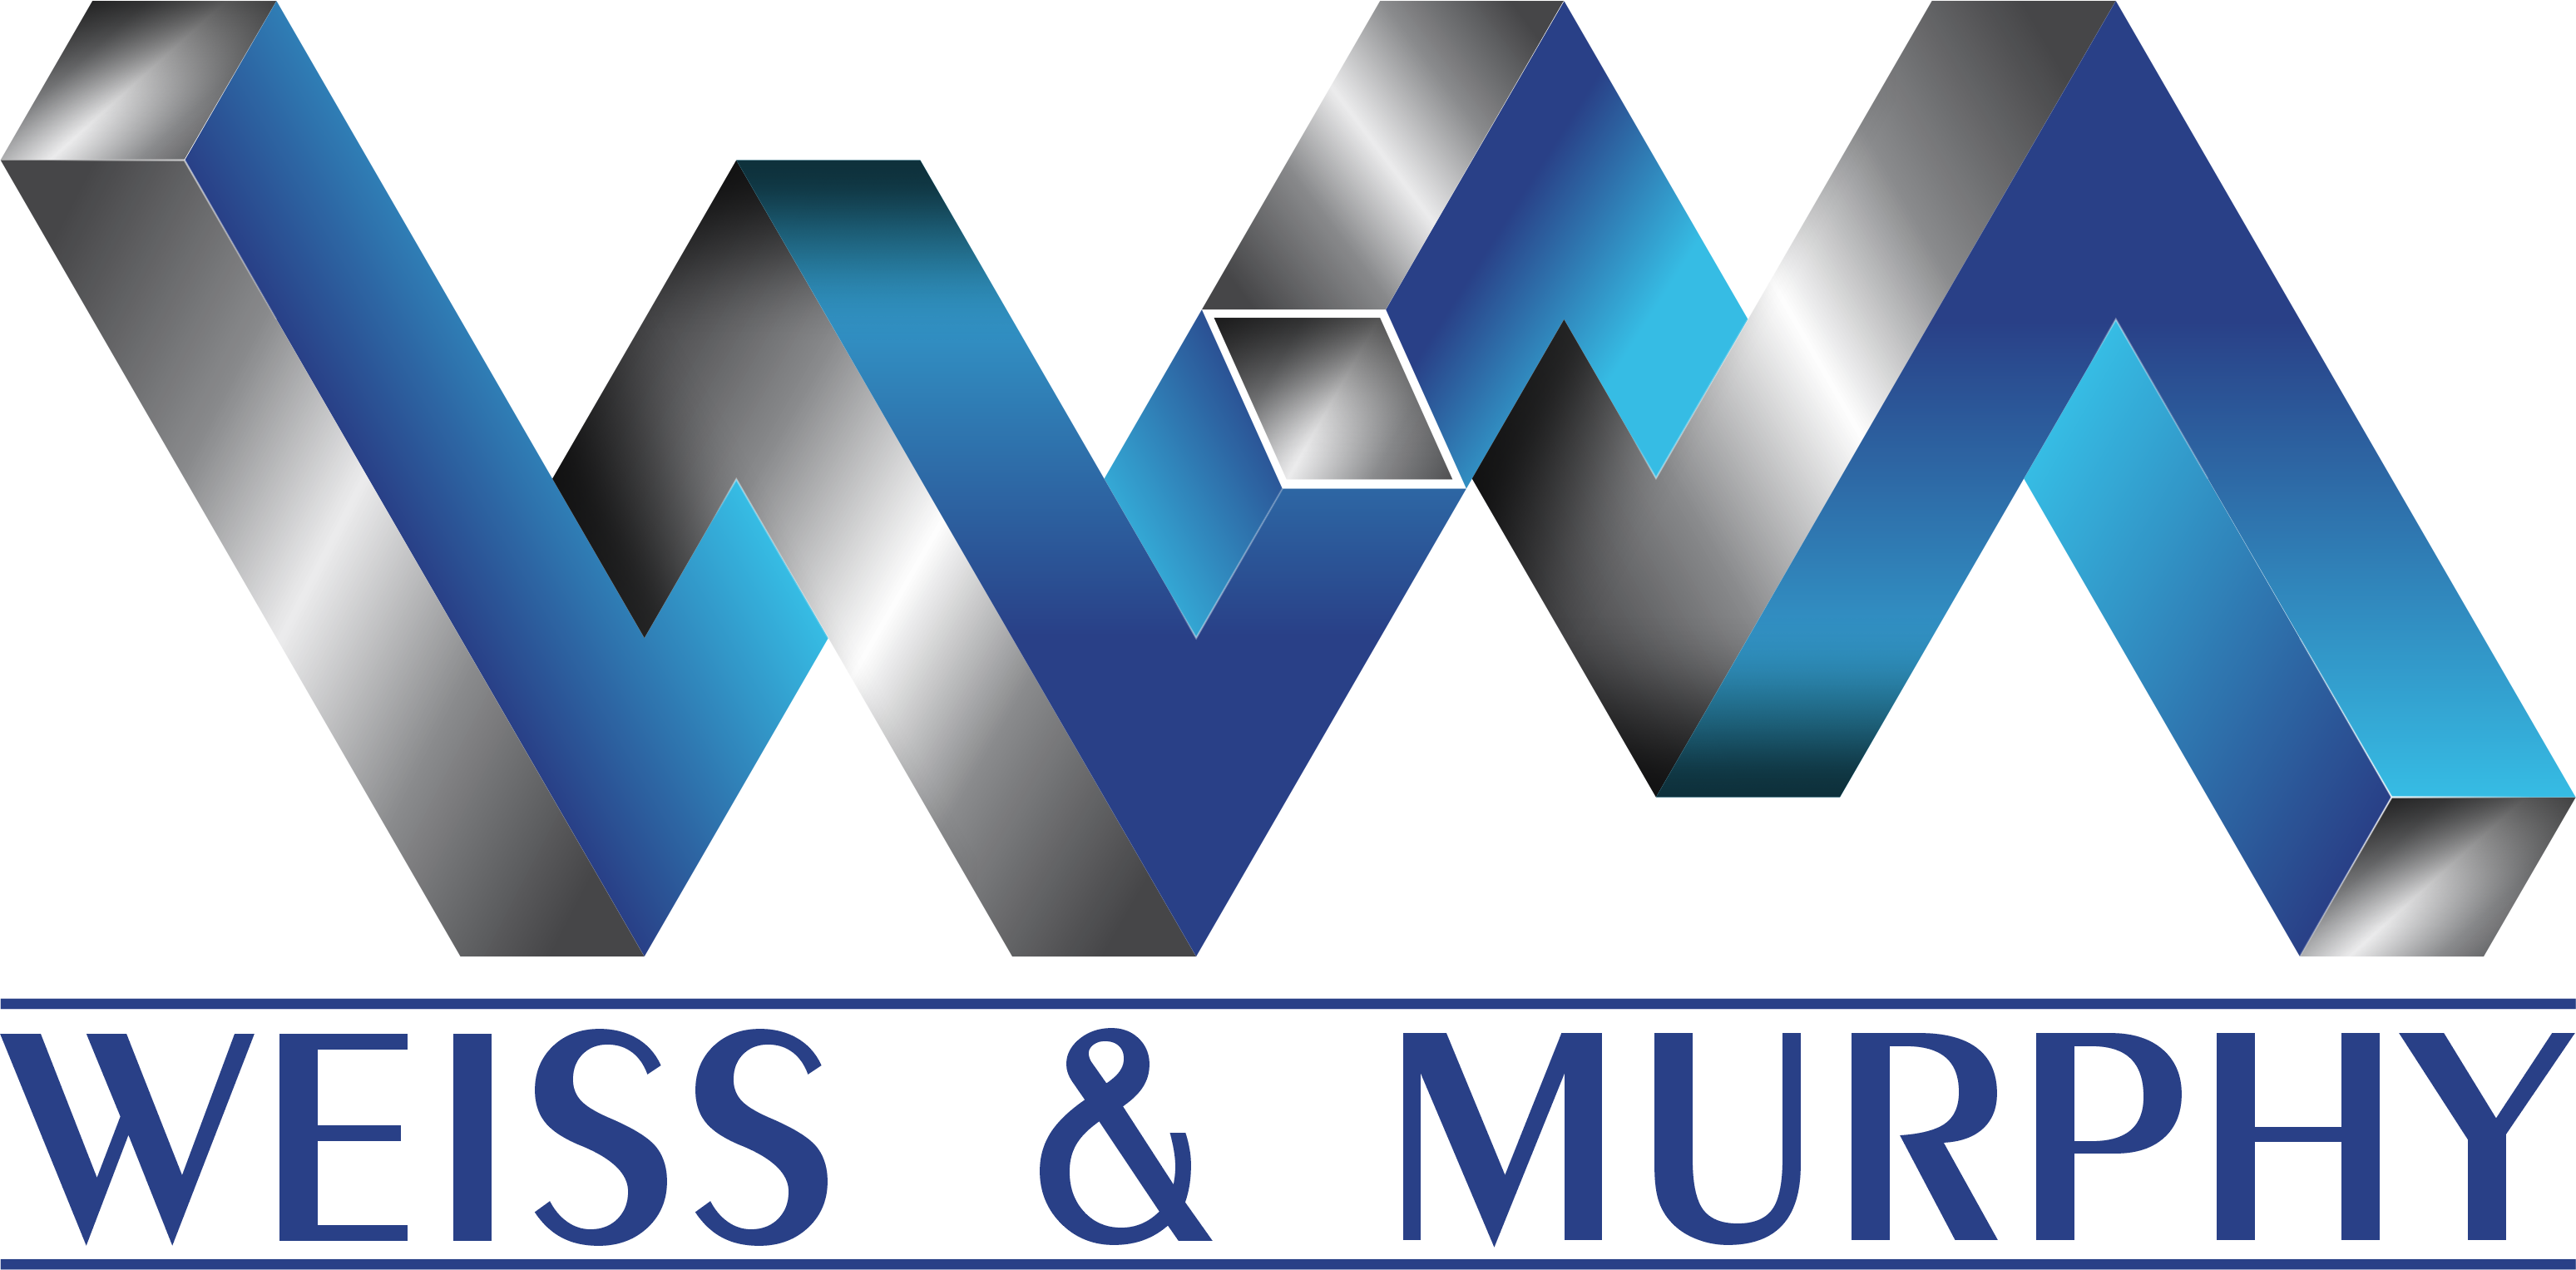 WEISS & MURPHY DESIGN